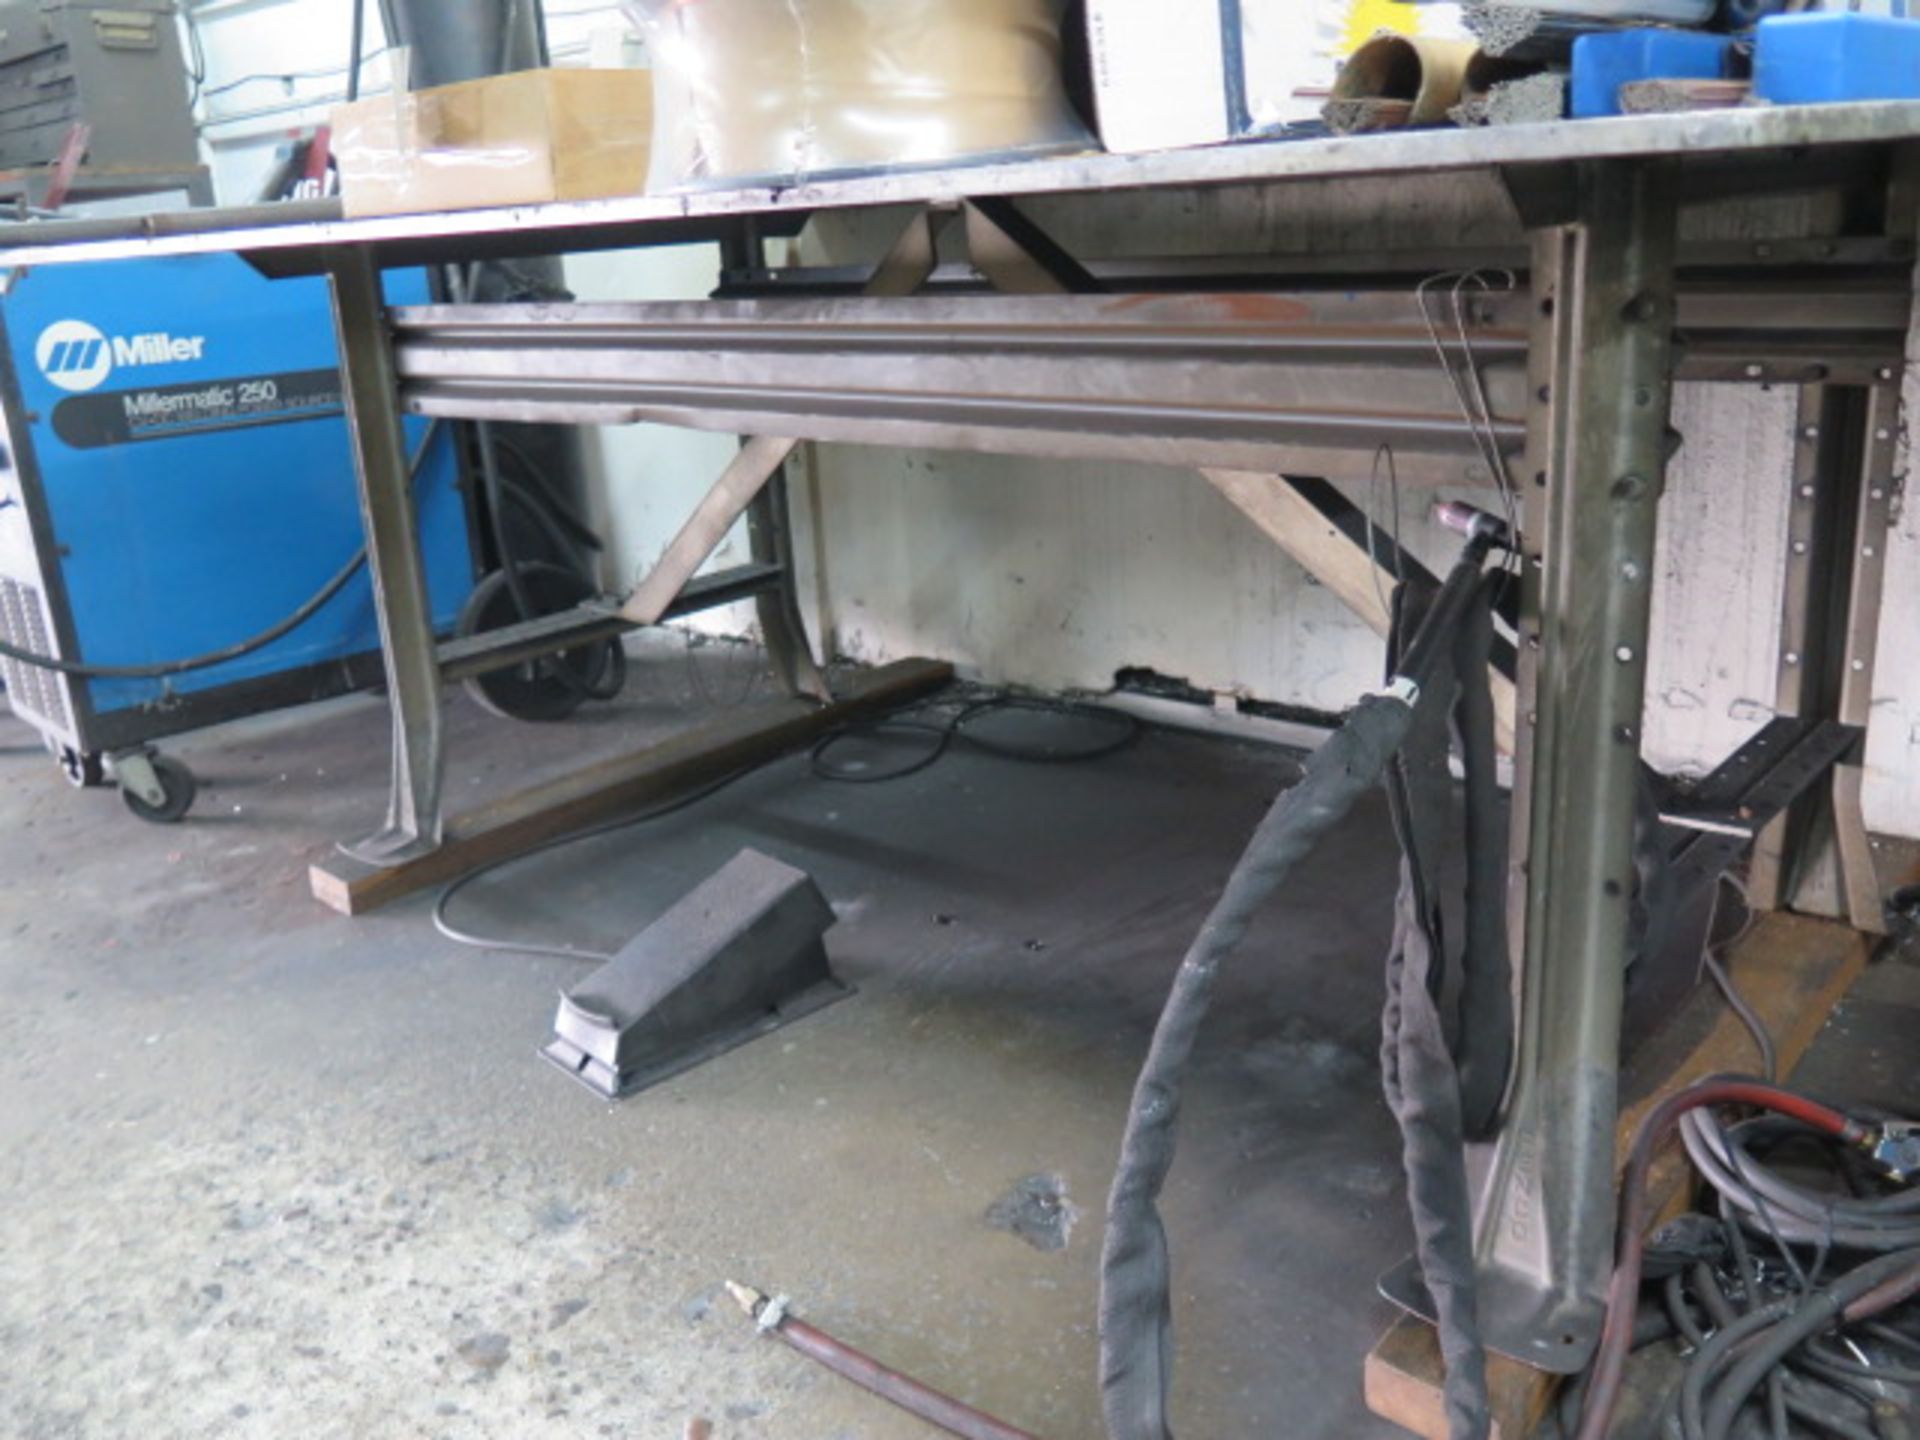 Aluminum Top Welding Table (SOLD AS-IS - NO WARRANTY) - Bild 3 aus 4